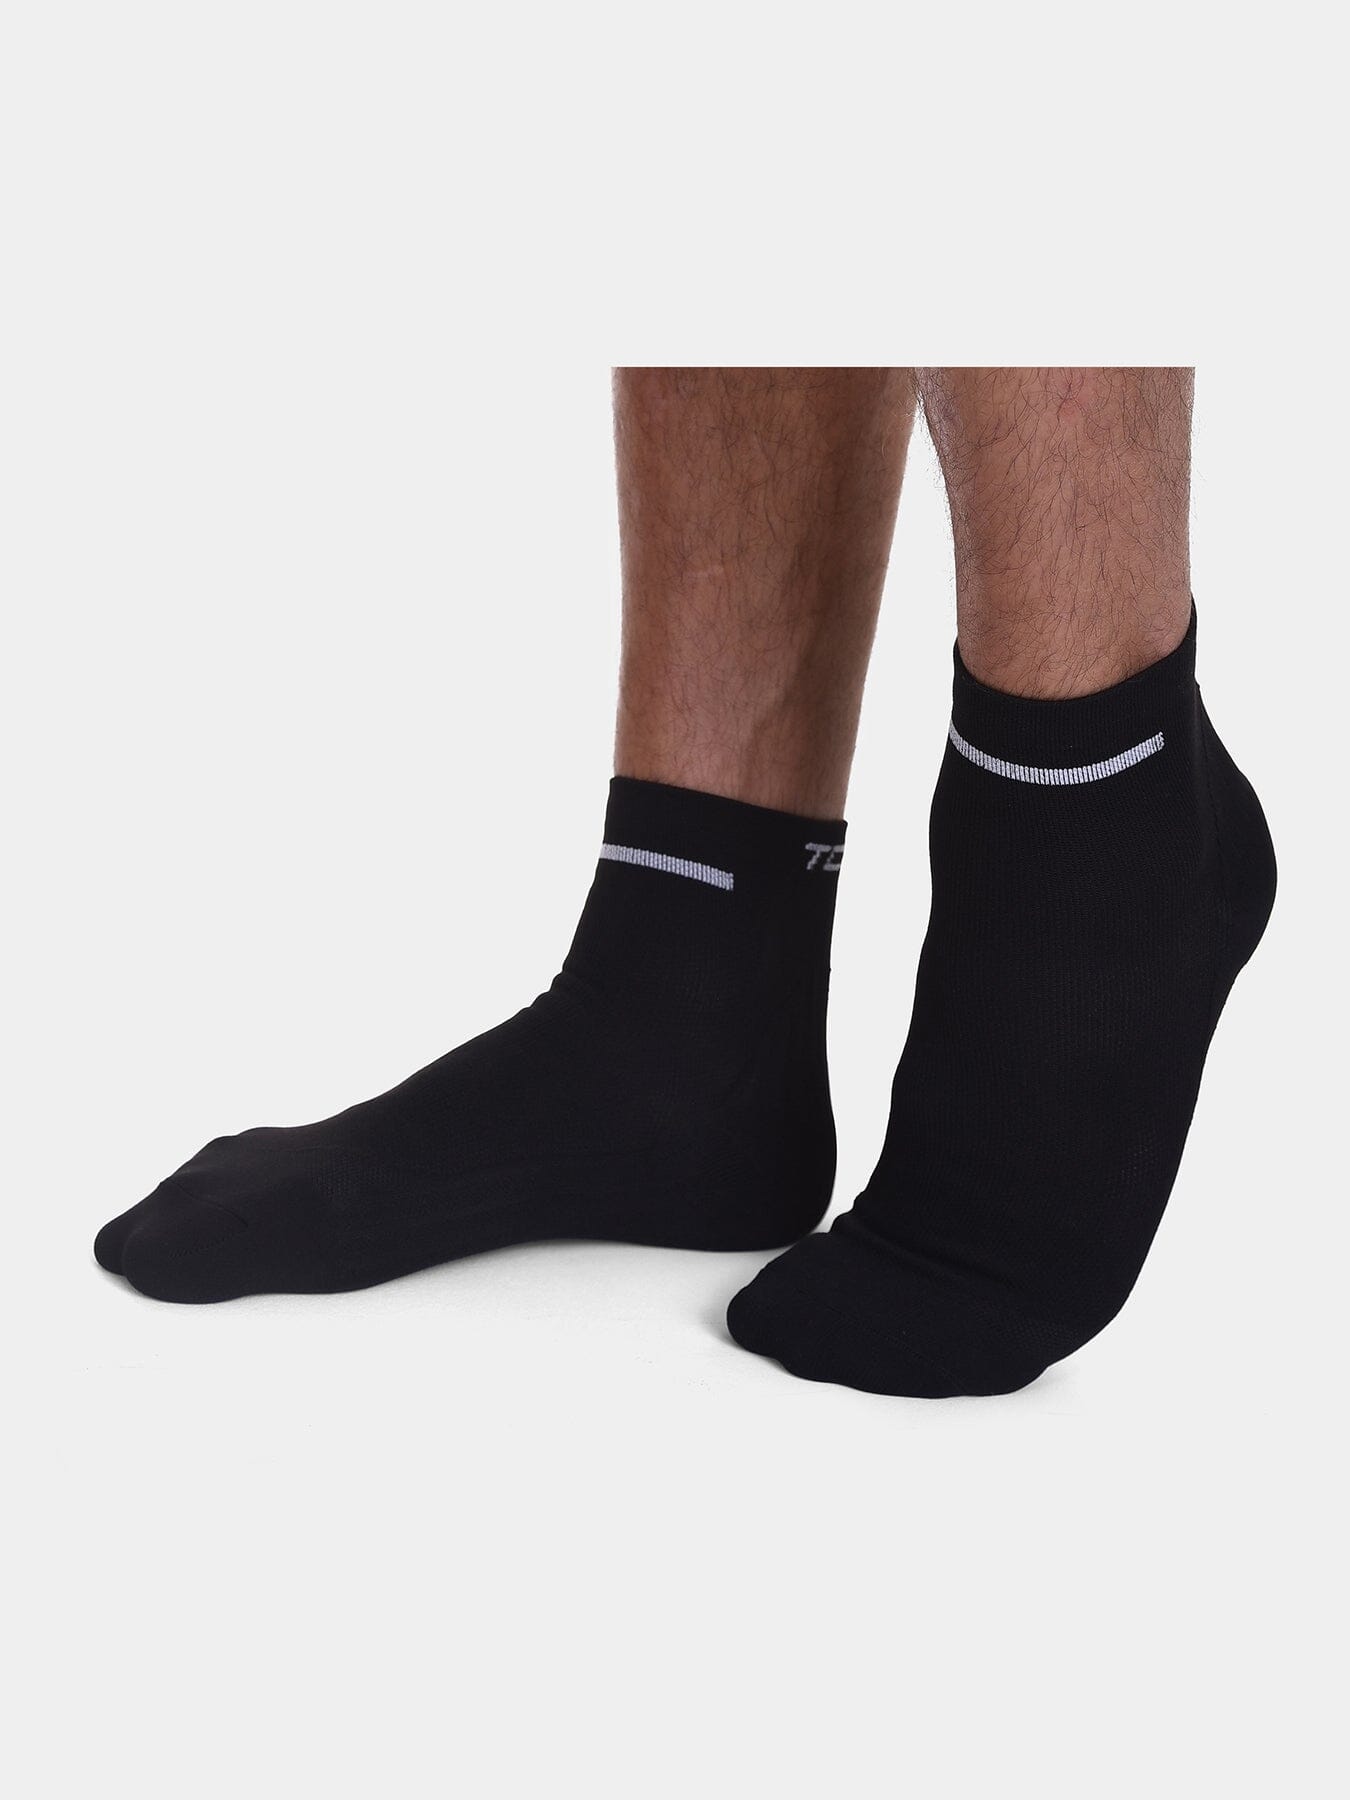 TCA Running Socks Unisex Trainer Compression socks for Men & Women